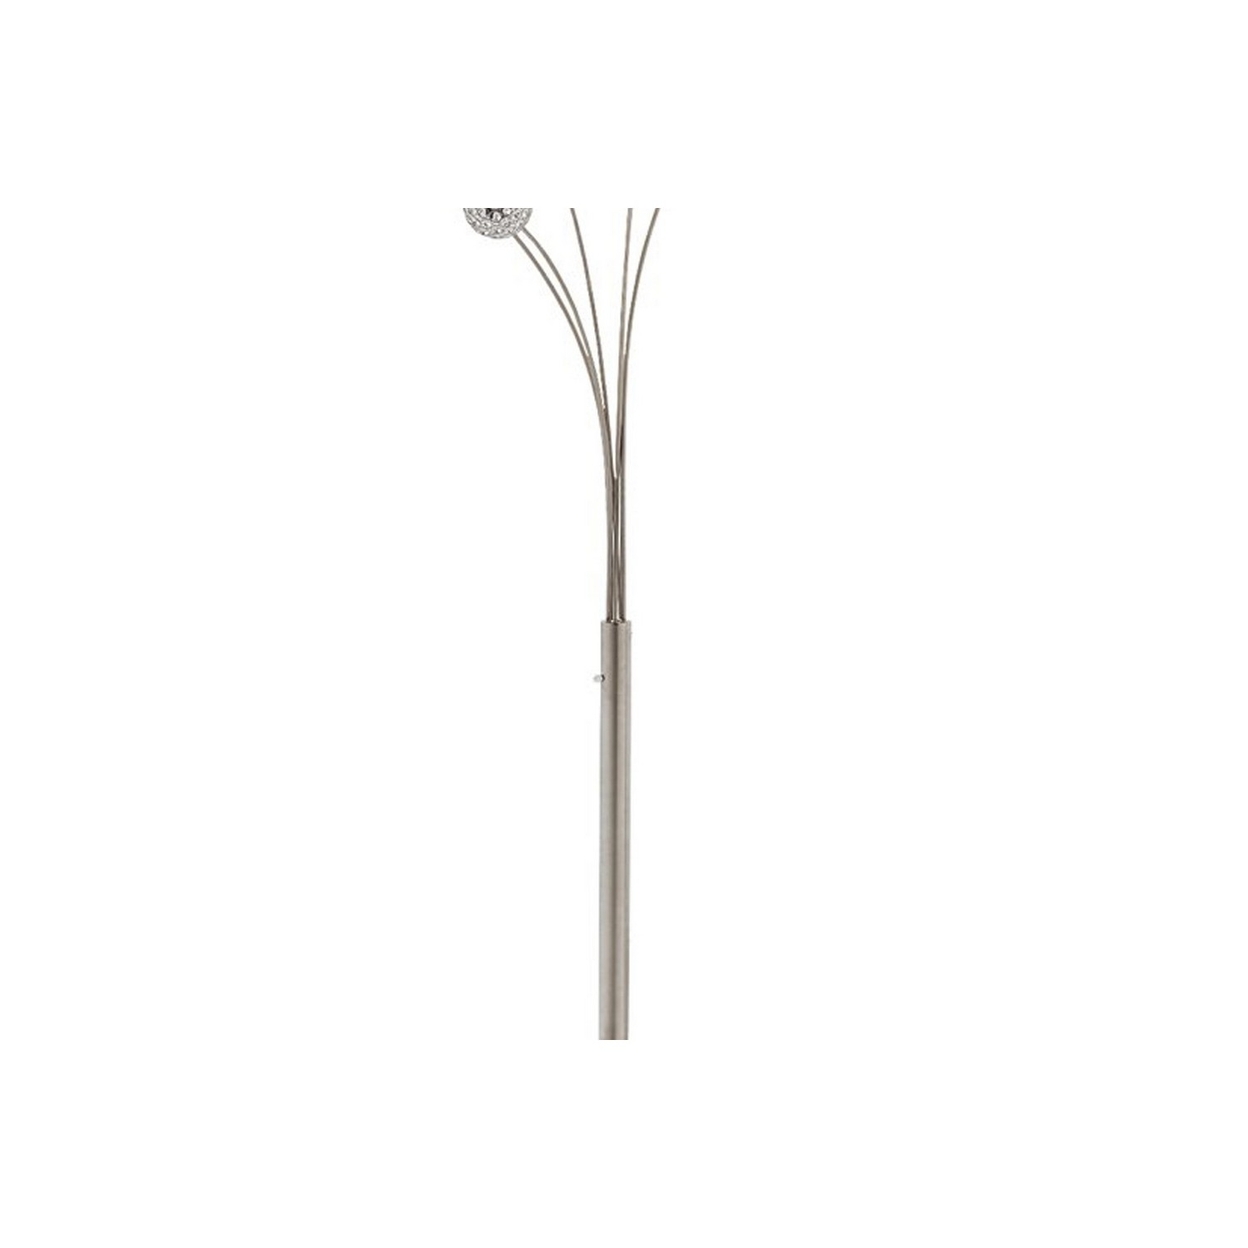 Contemporary Metal Arc Acrylic Bead Lamp With Circular Leg Base, Silver- Saltoro Sherpi